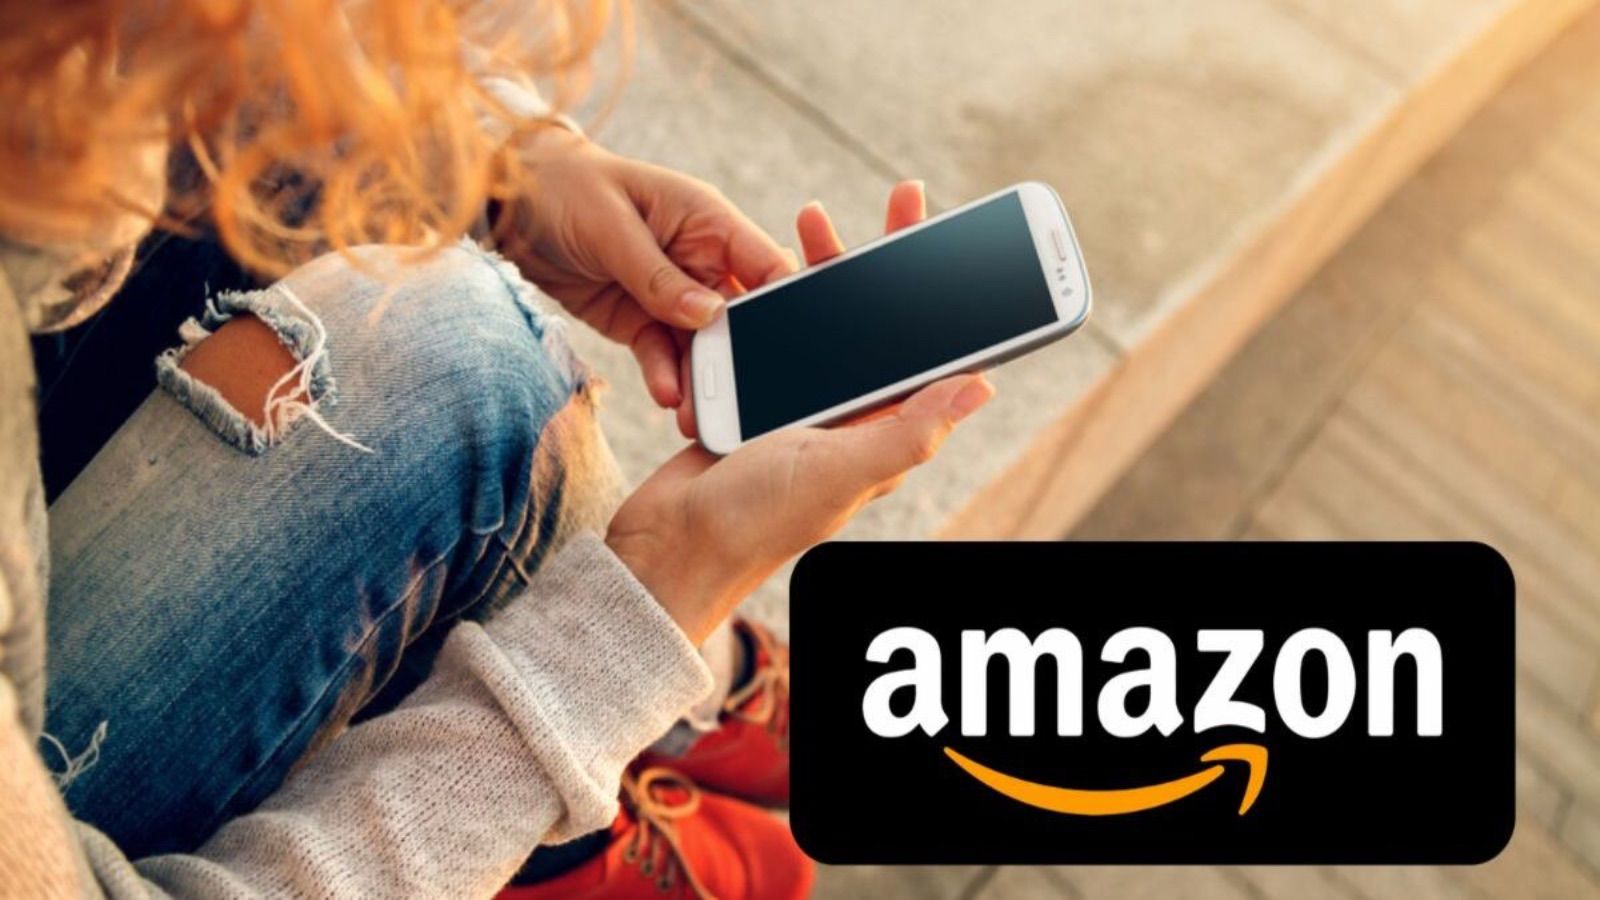 Amazon ASSURDA, tornano gli sconti segreti al 70%